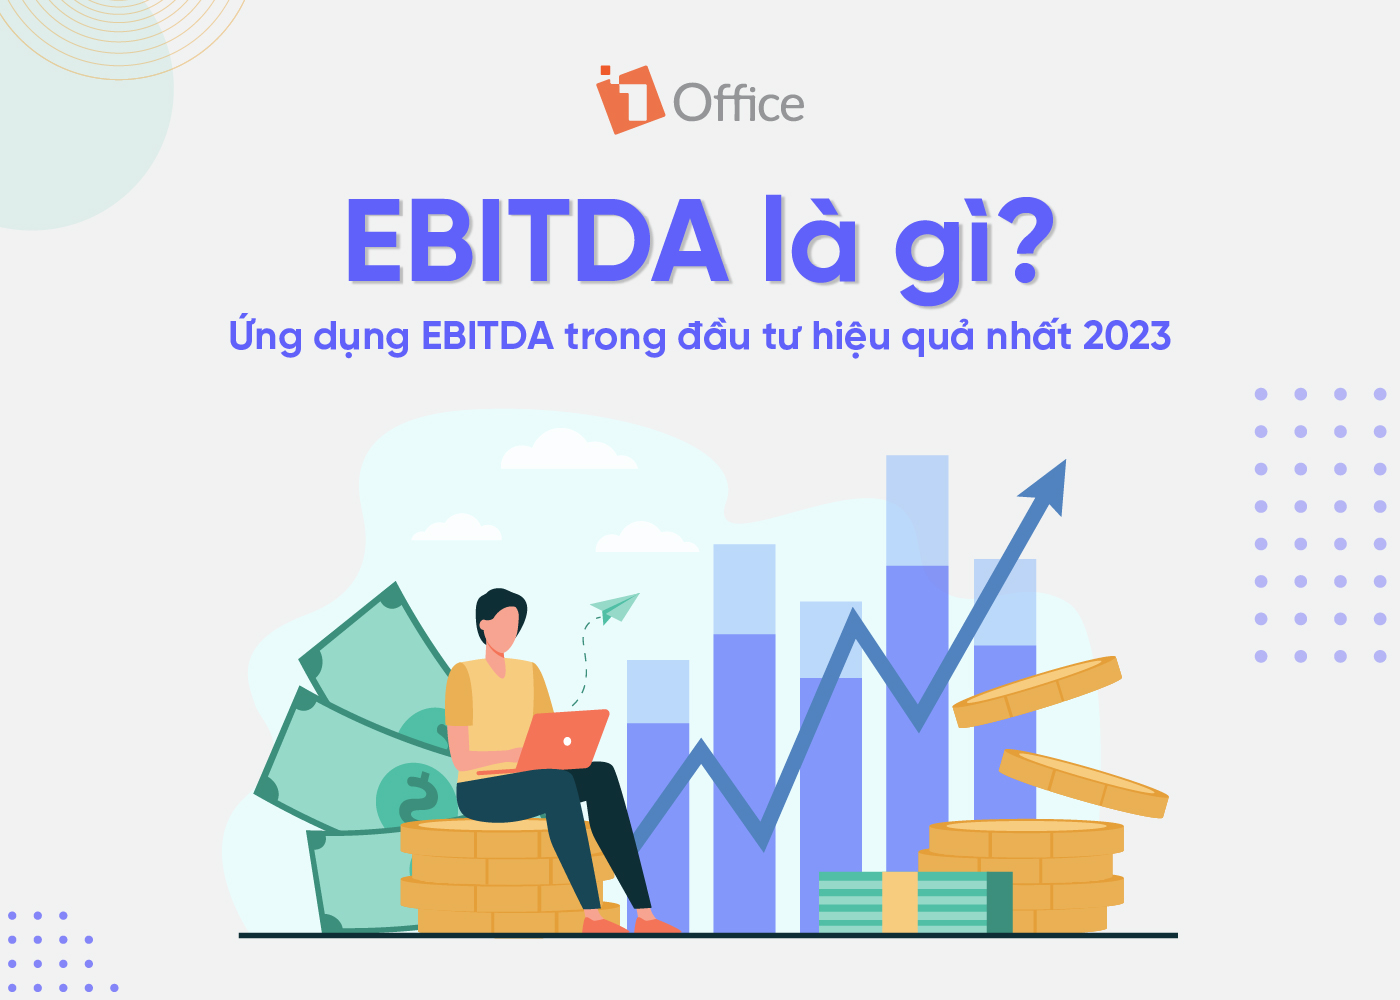 EBITDA là gì? Ứng dụng EBITDA trong đầu tư hiệu quả nhất 2023